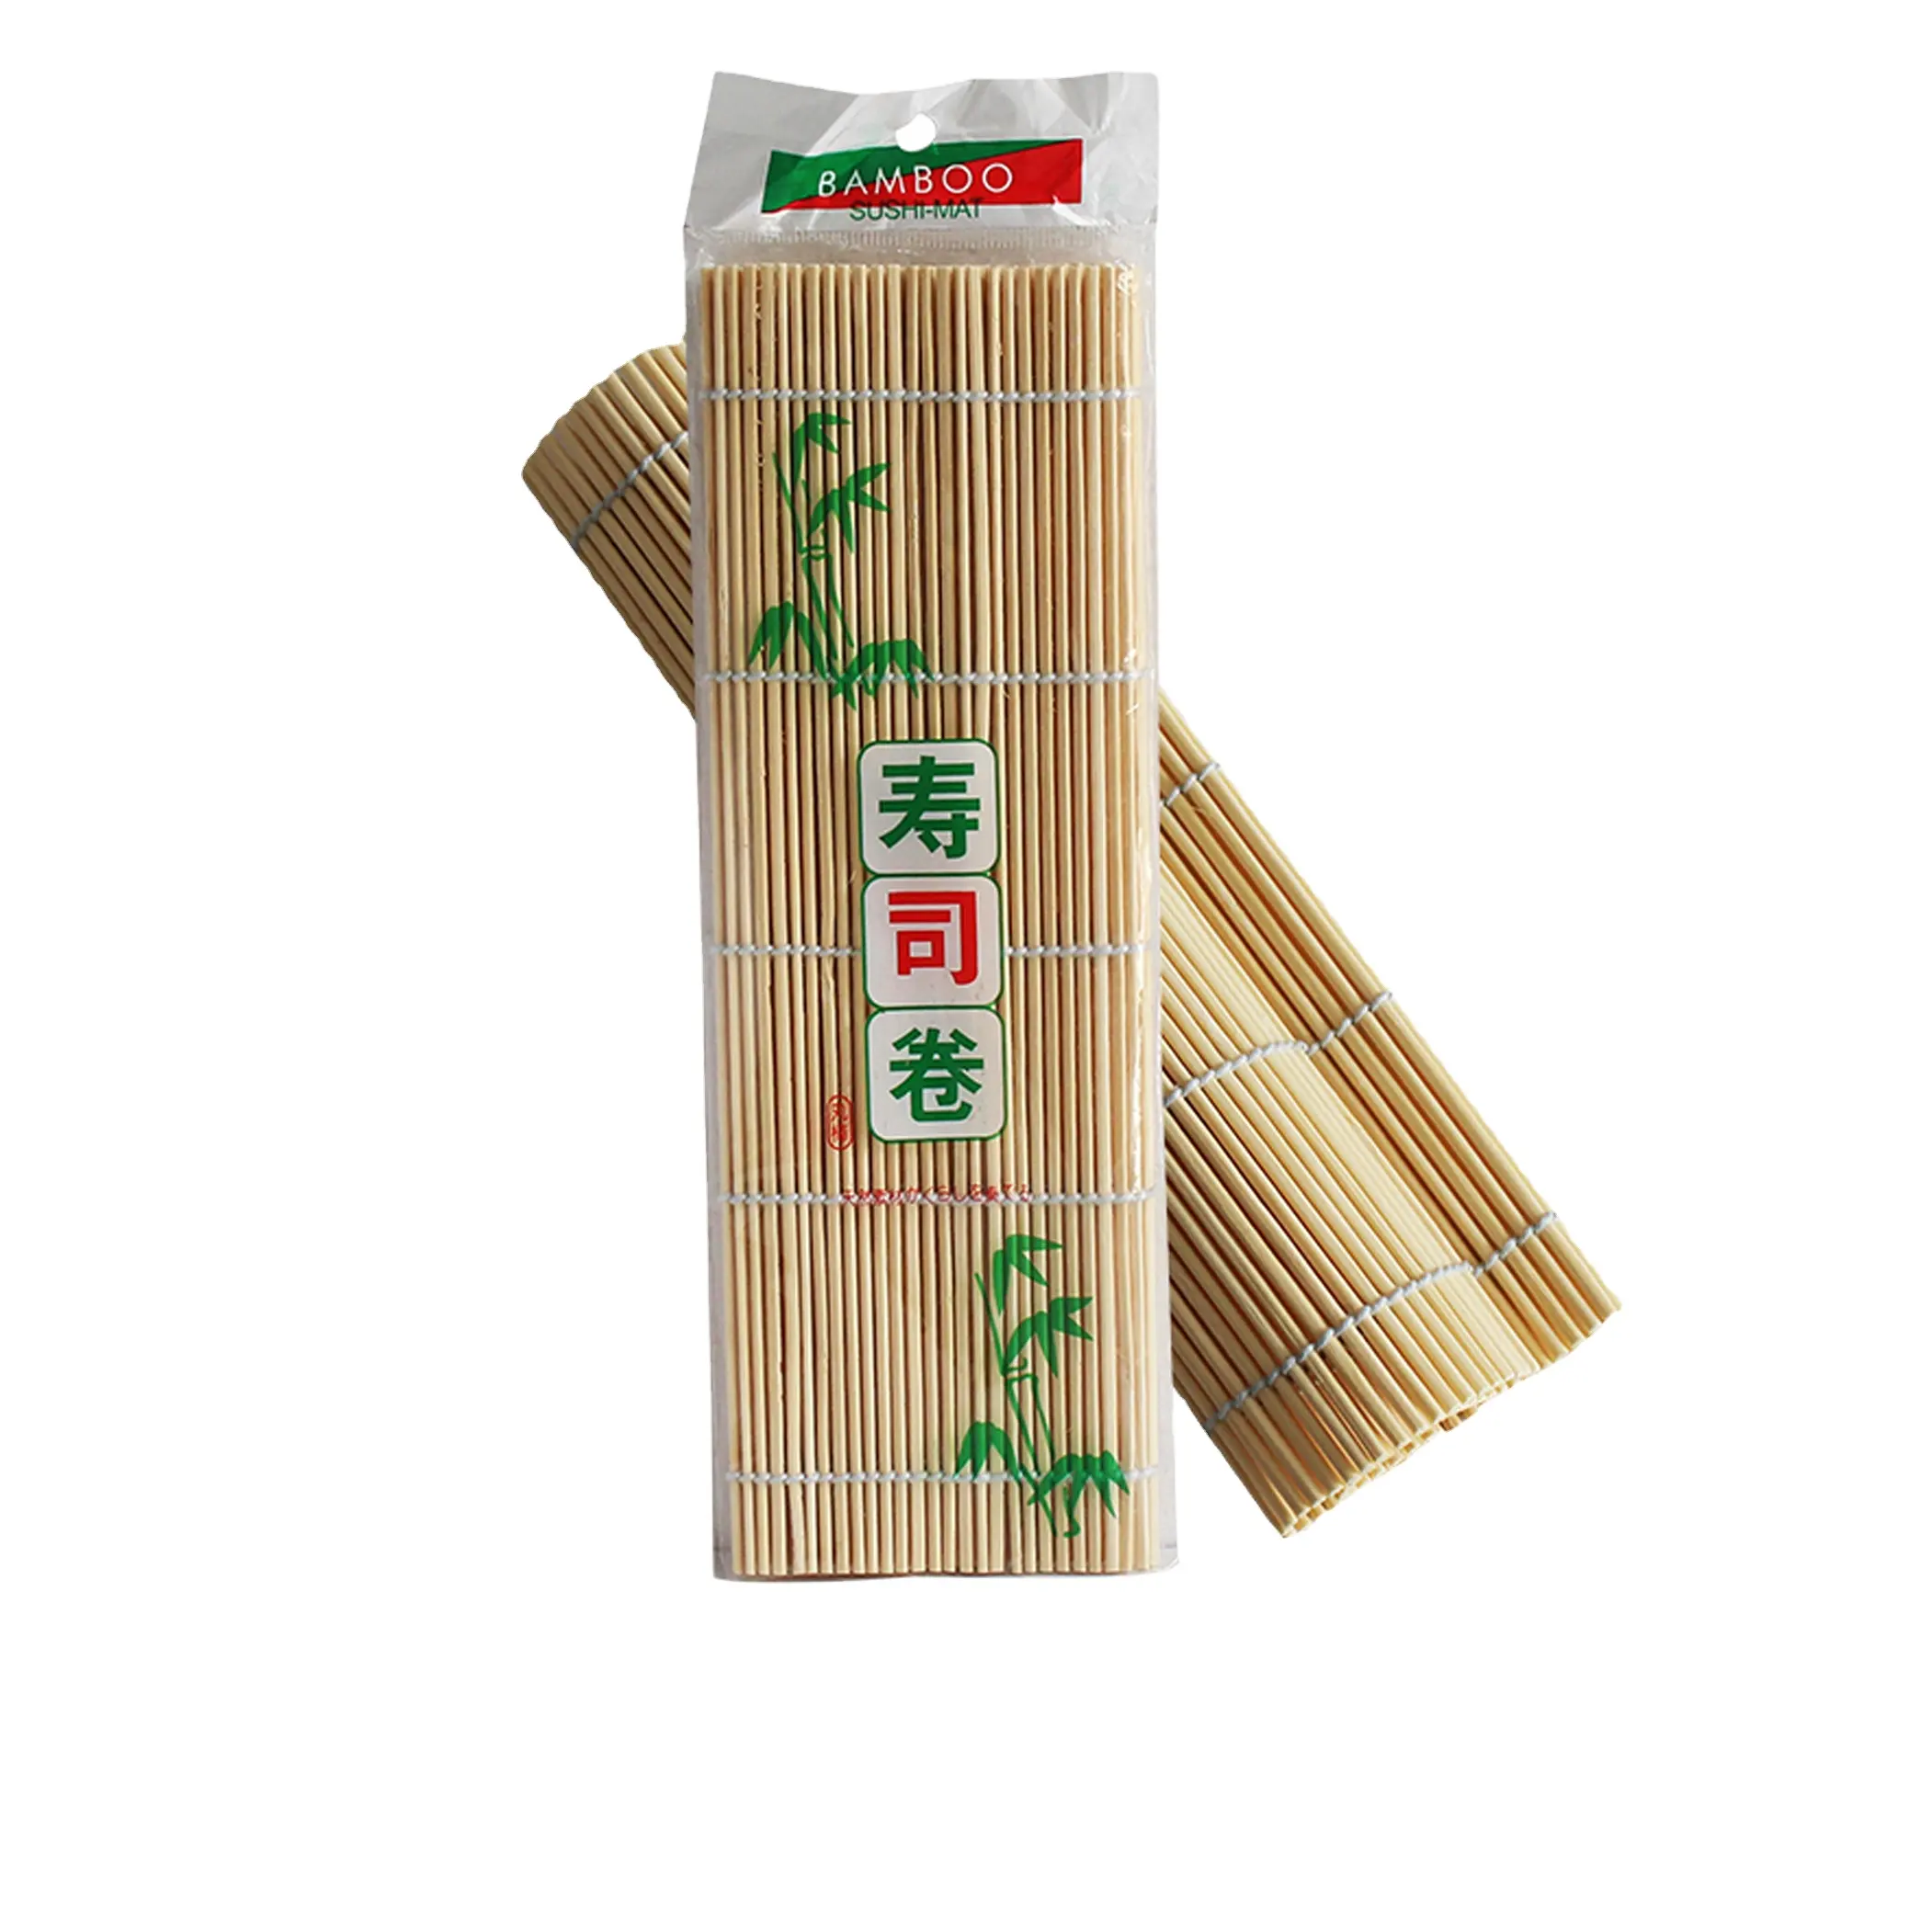 Hoge Kwaliteit Janpases Stijl Bamboe Blad Bevroren Masago Roe 27Cm 24Cm Wit En Groen Bamboe Sushi Rolling Mat Voor Sushi Eten